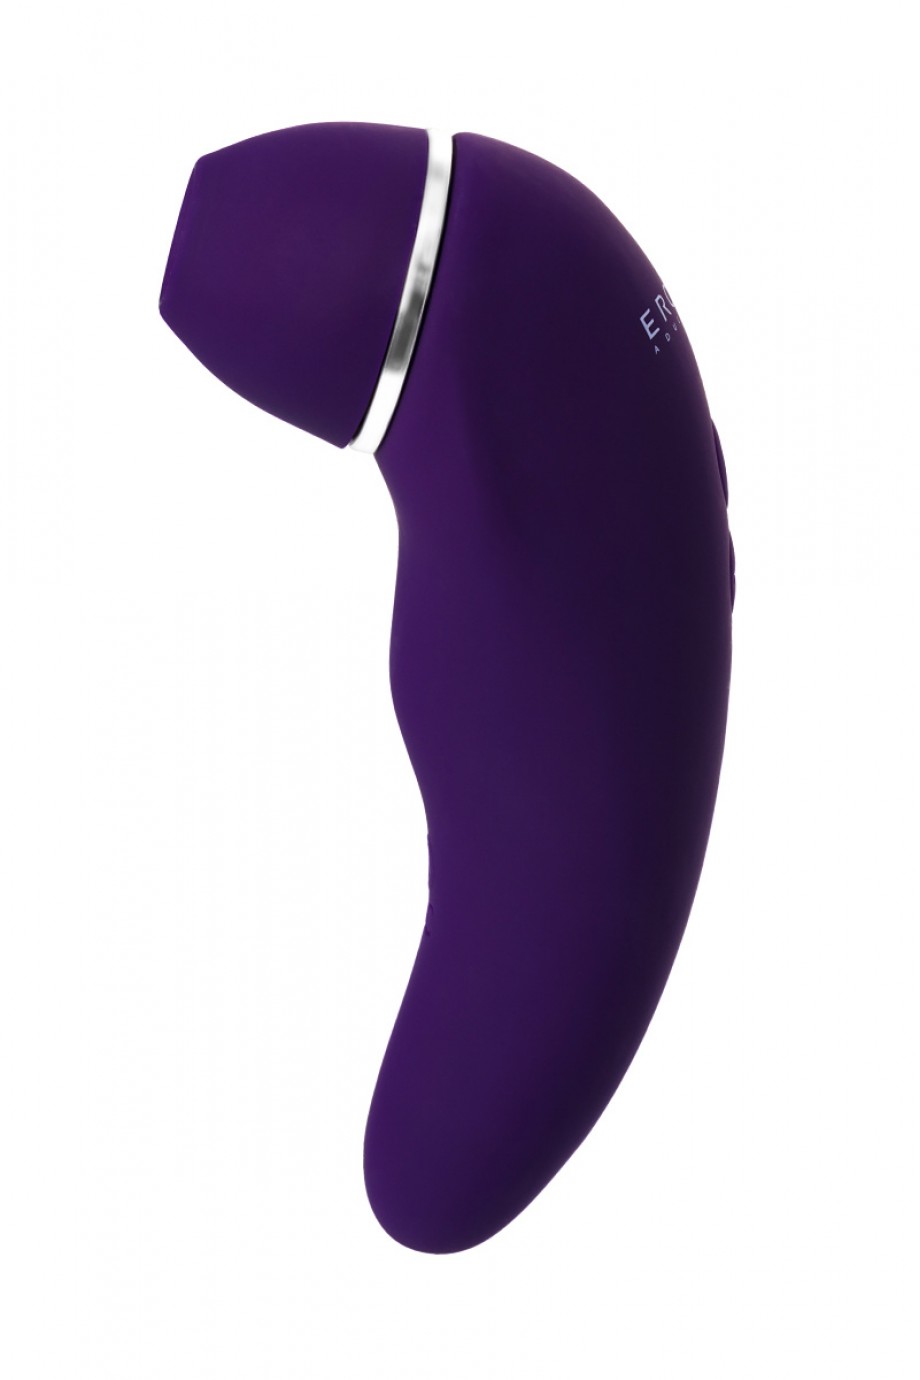 Erotist Coxy клиторальный массажер, фиолетовый